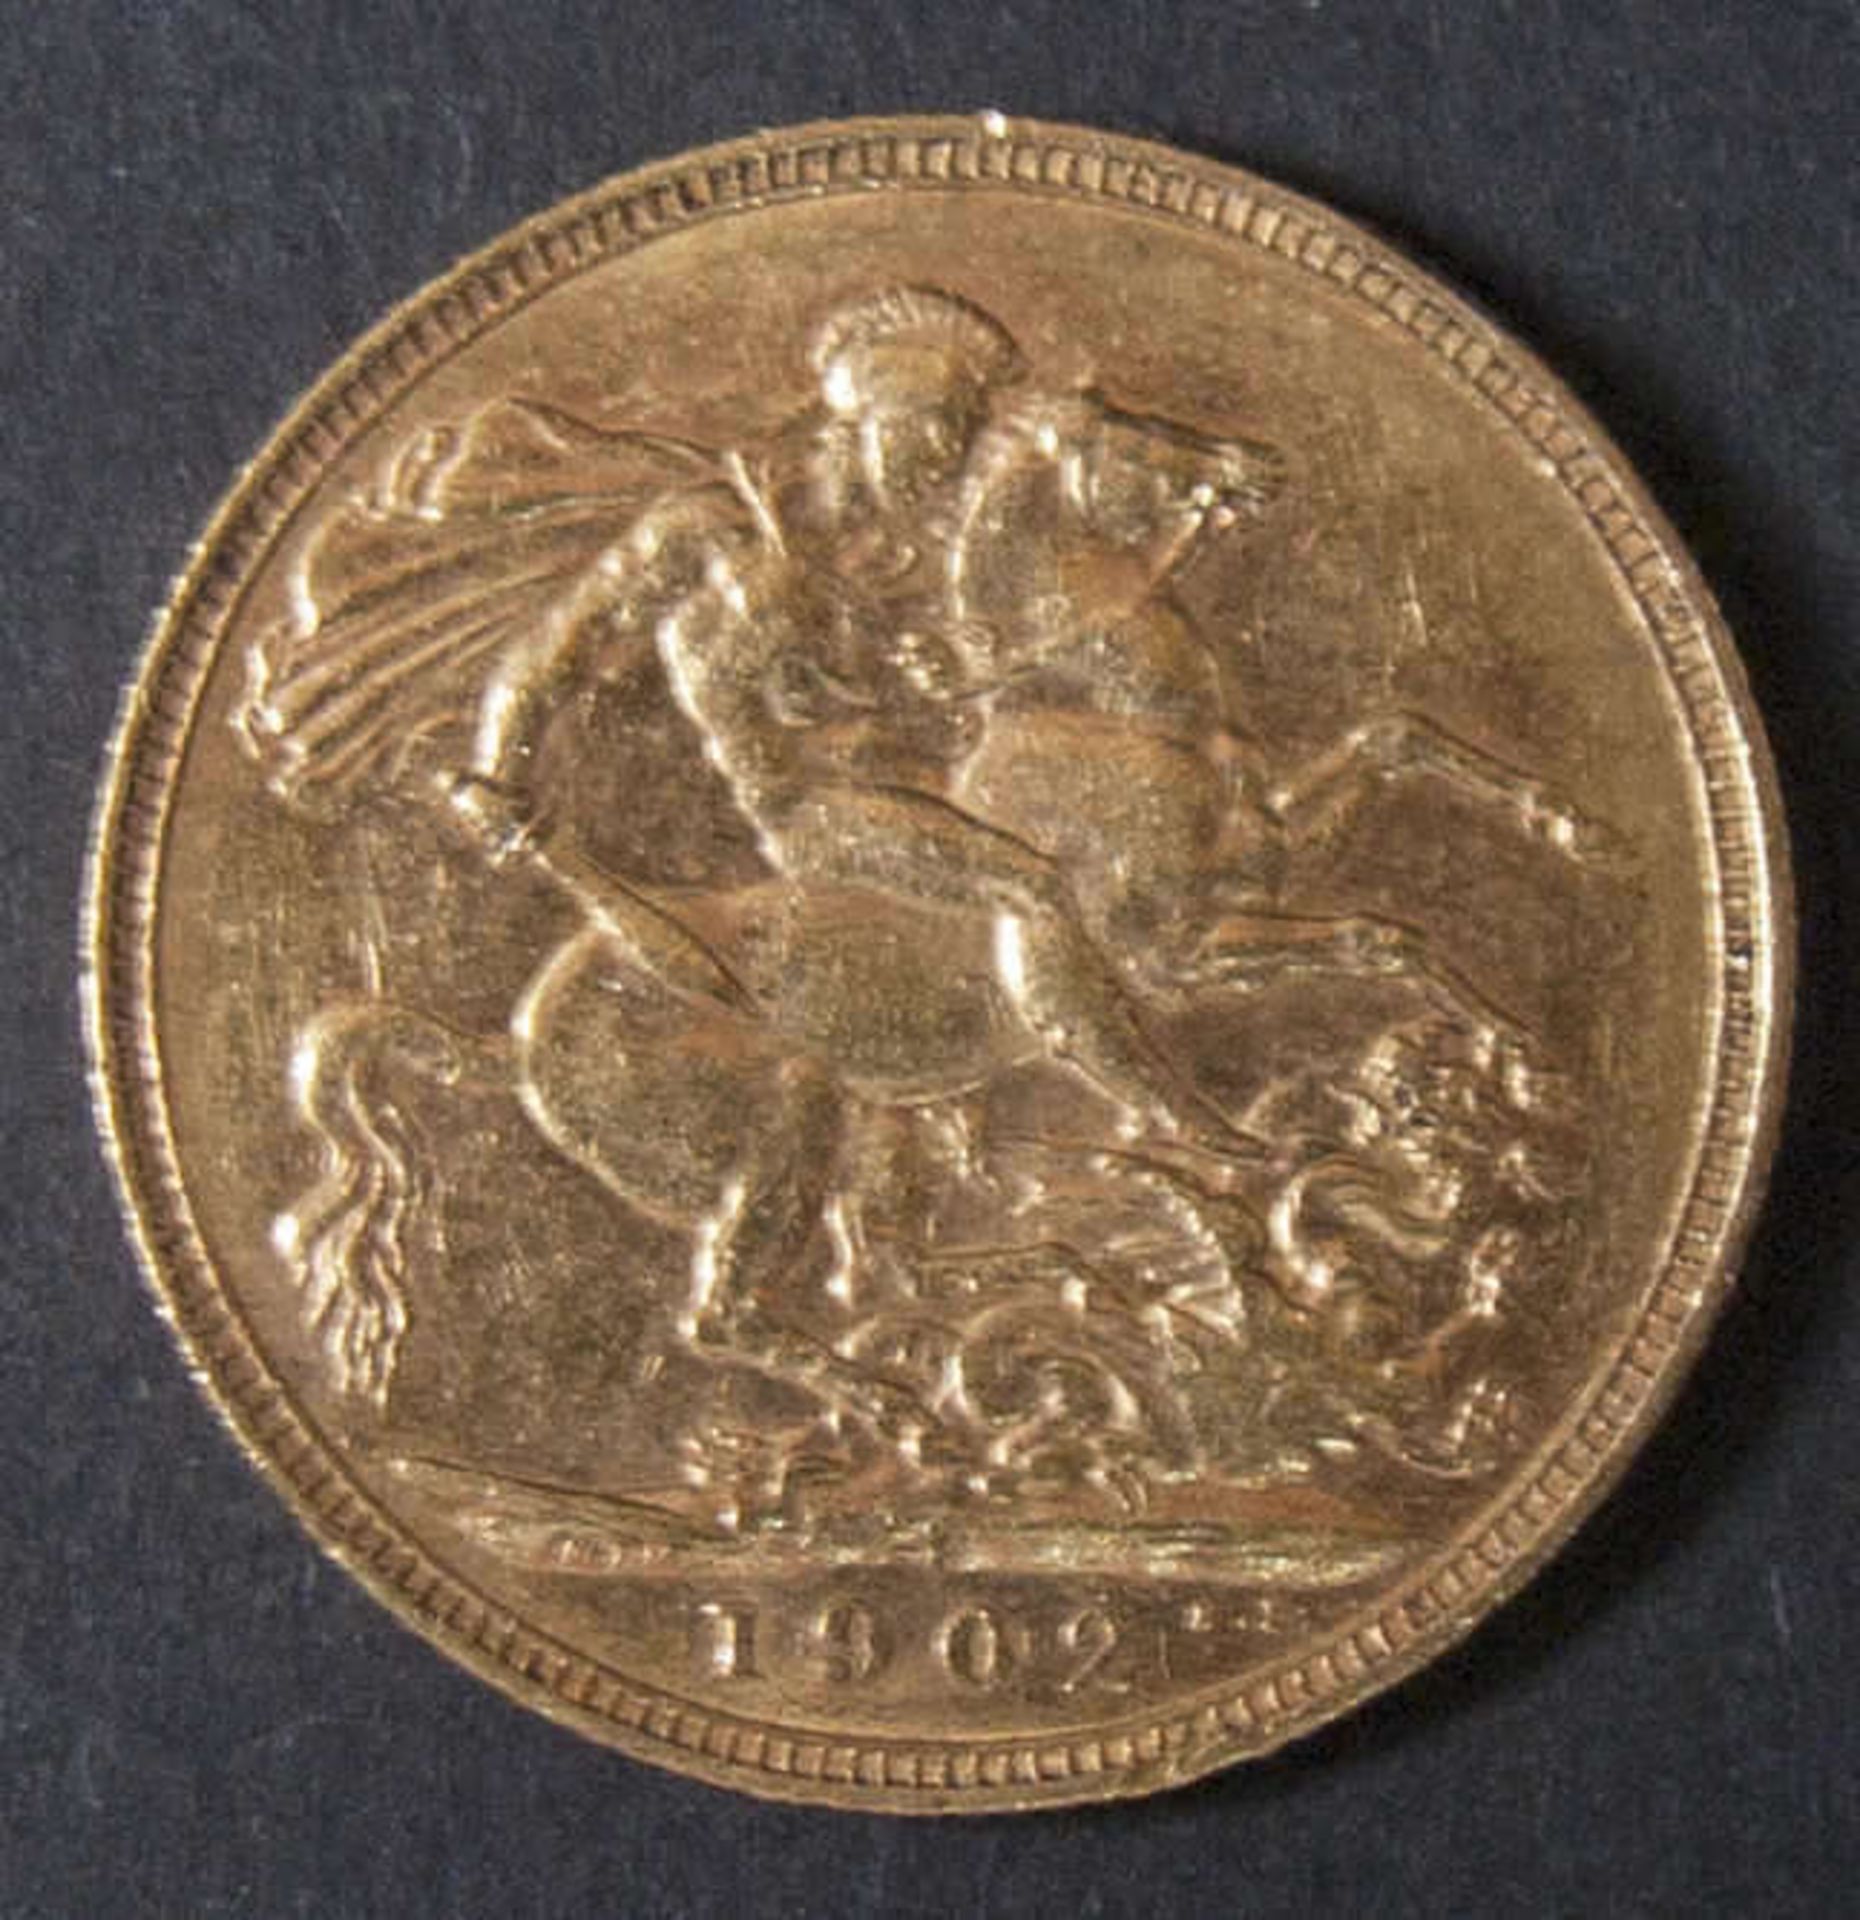 Großbritannien 1902, Sovereign "Edward VII.". Gold. Gewicht: ca. 7,9 g. Qualität: ss. Great - Bild 2 aus 2